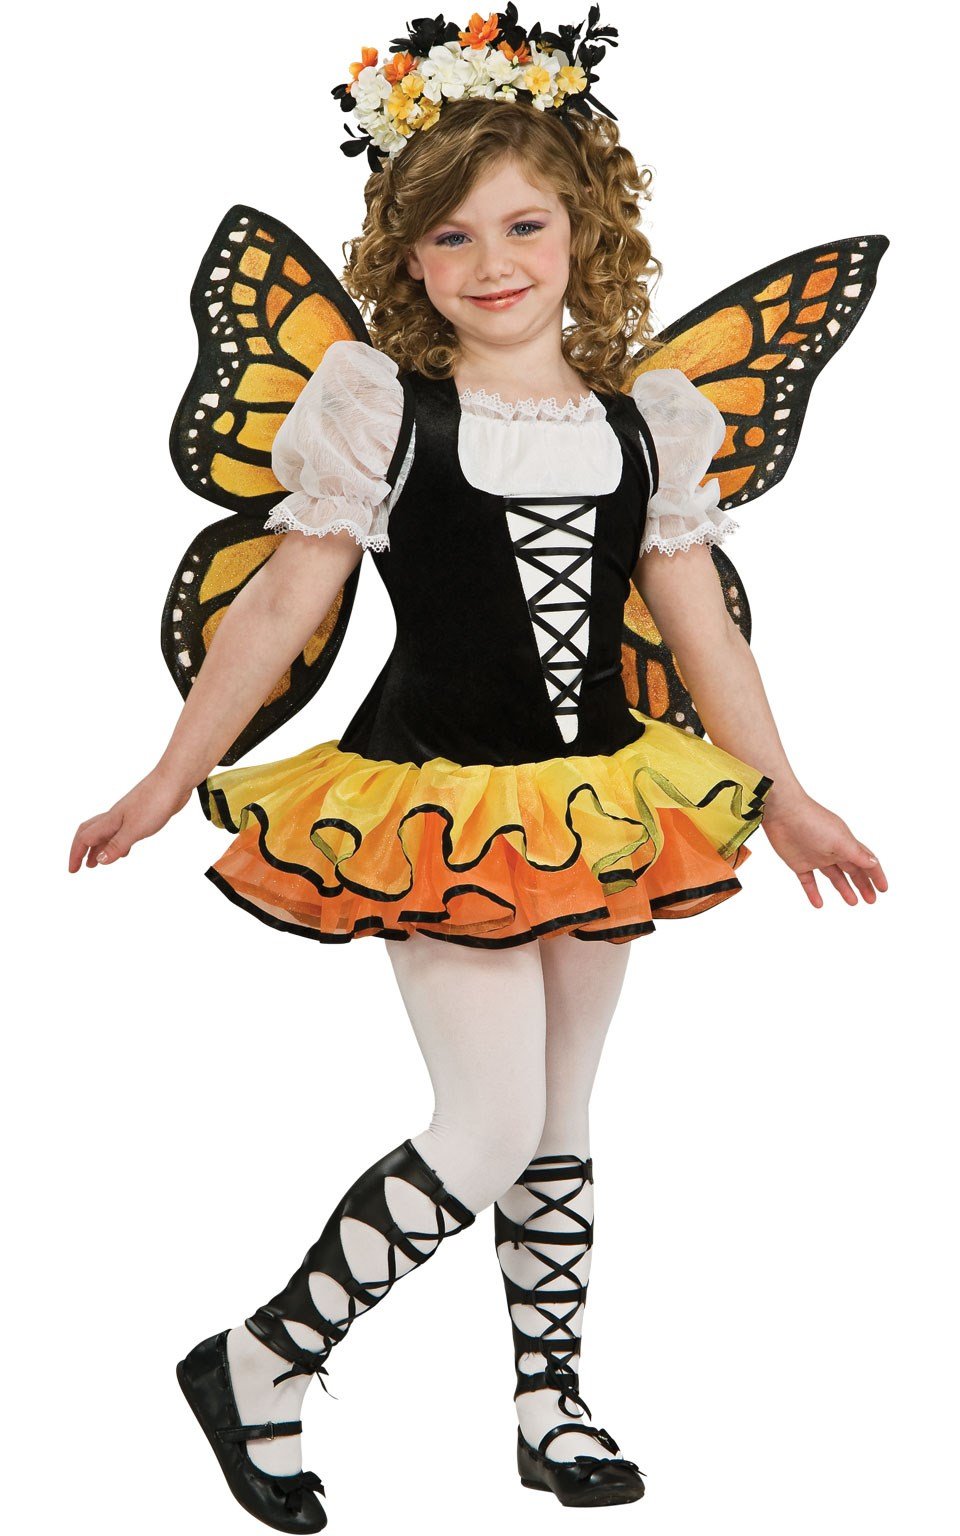 Kelebek Kız Kostümü, 1-2 Yaş - PartiShop.net - Parti Kostümleri